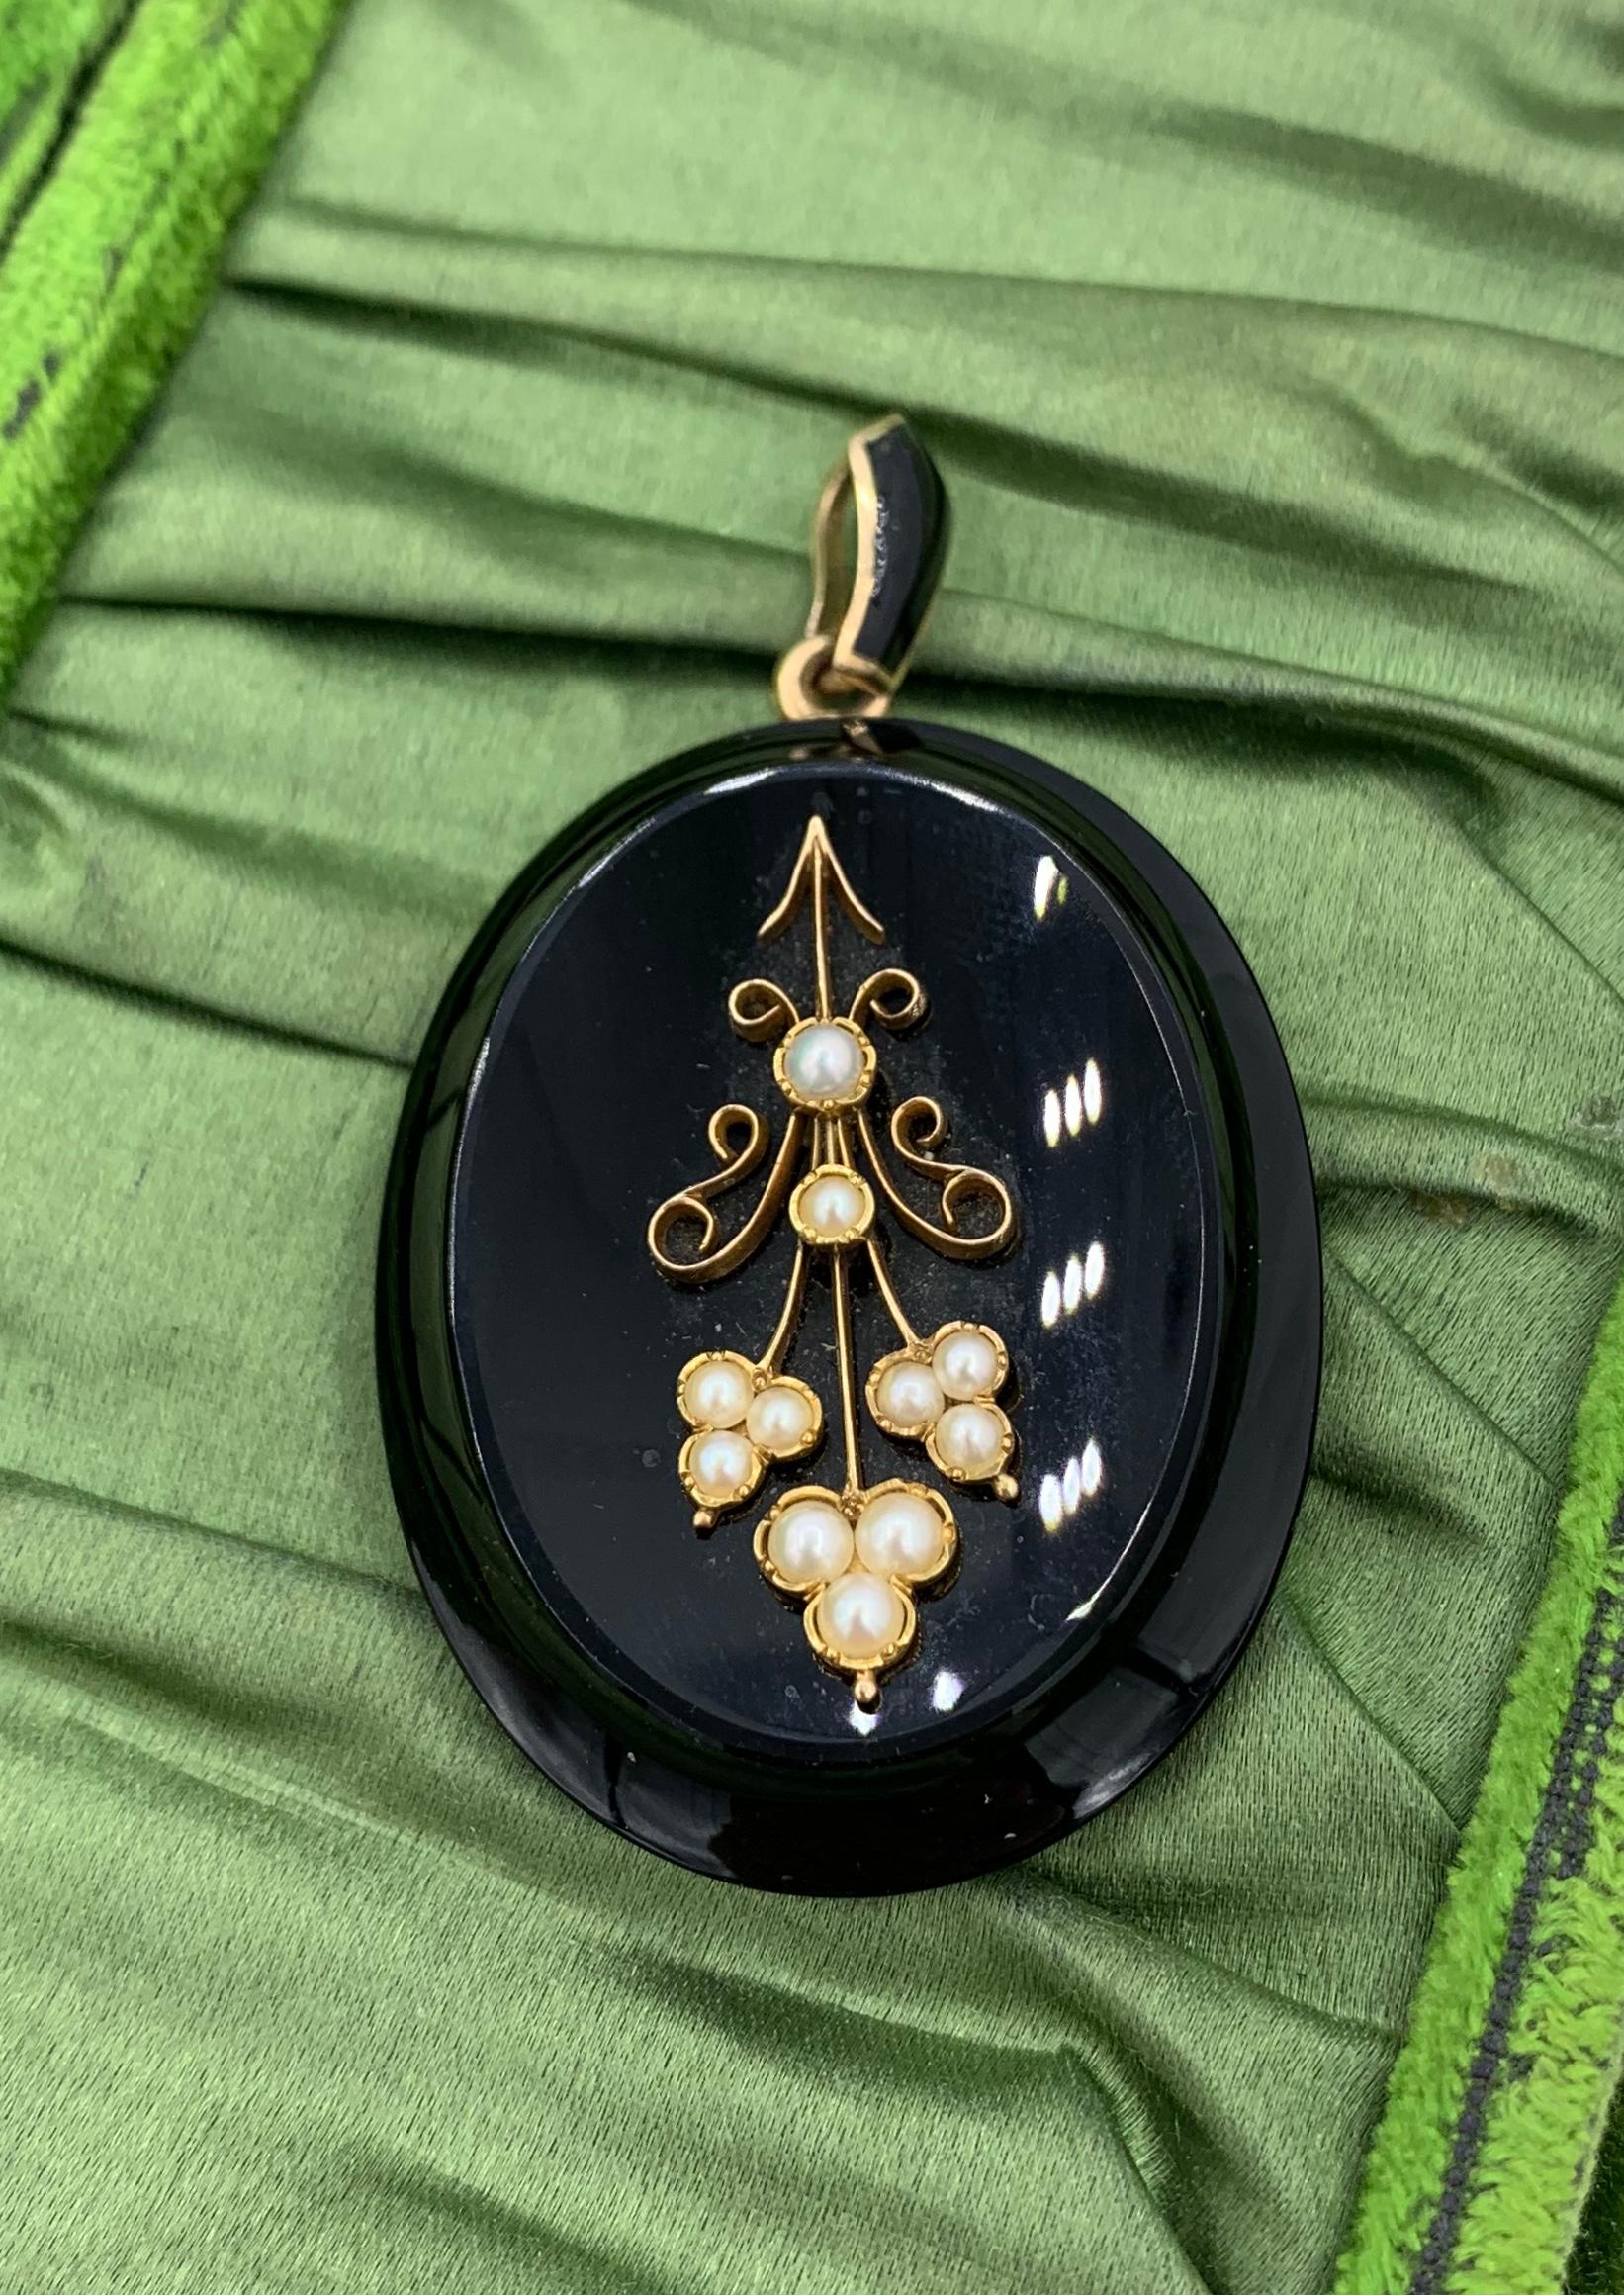 Il s'agit d'un magnifique pendentif pendentif de style Victorien - Belle Epoque en Onyx noir et or 14 carats avec des ornements de perles dans un motif de fleur avec un exquis motif de cheveux tressés en damier au verso.  C'est l'un des plus beaux